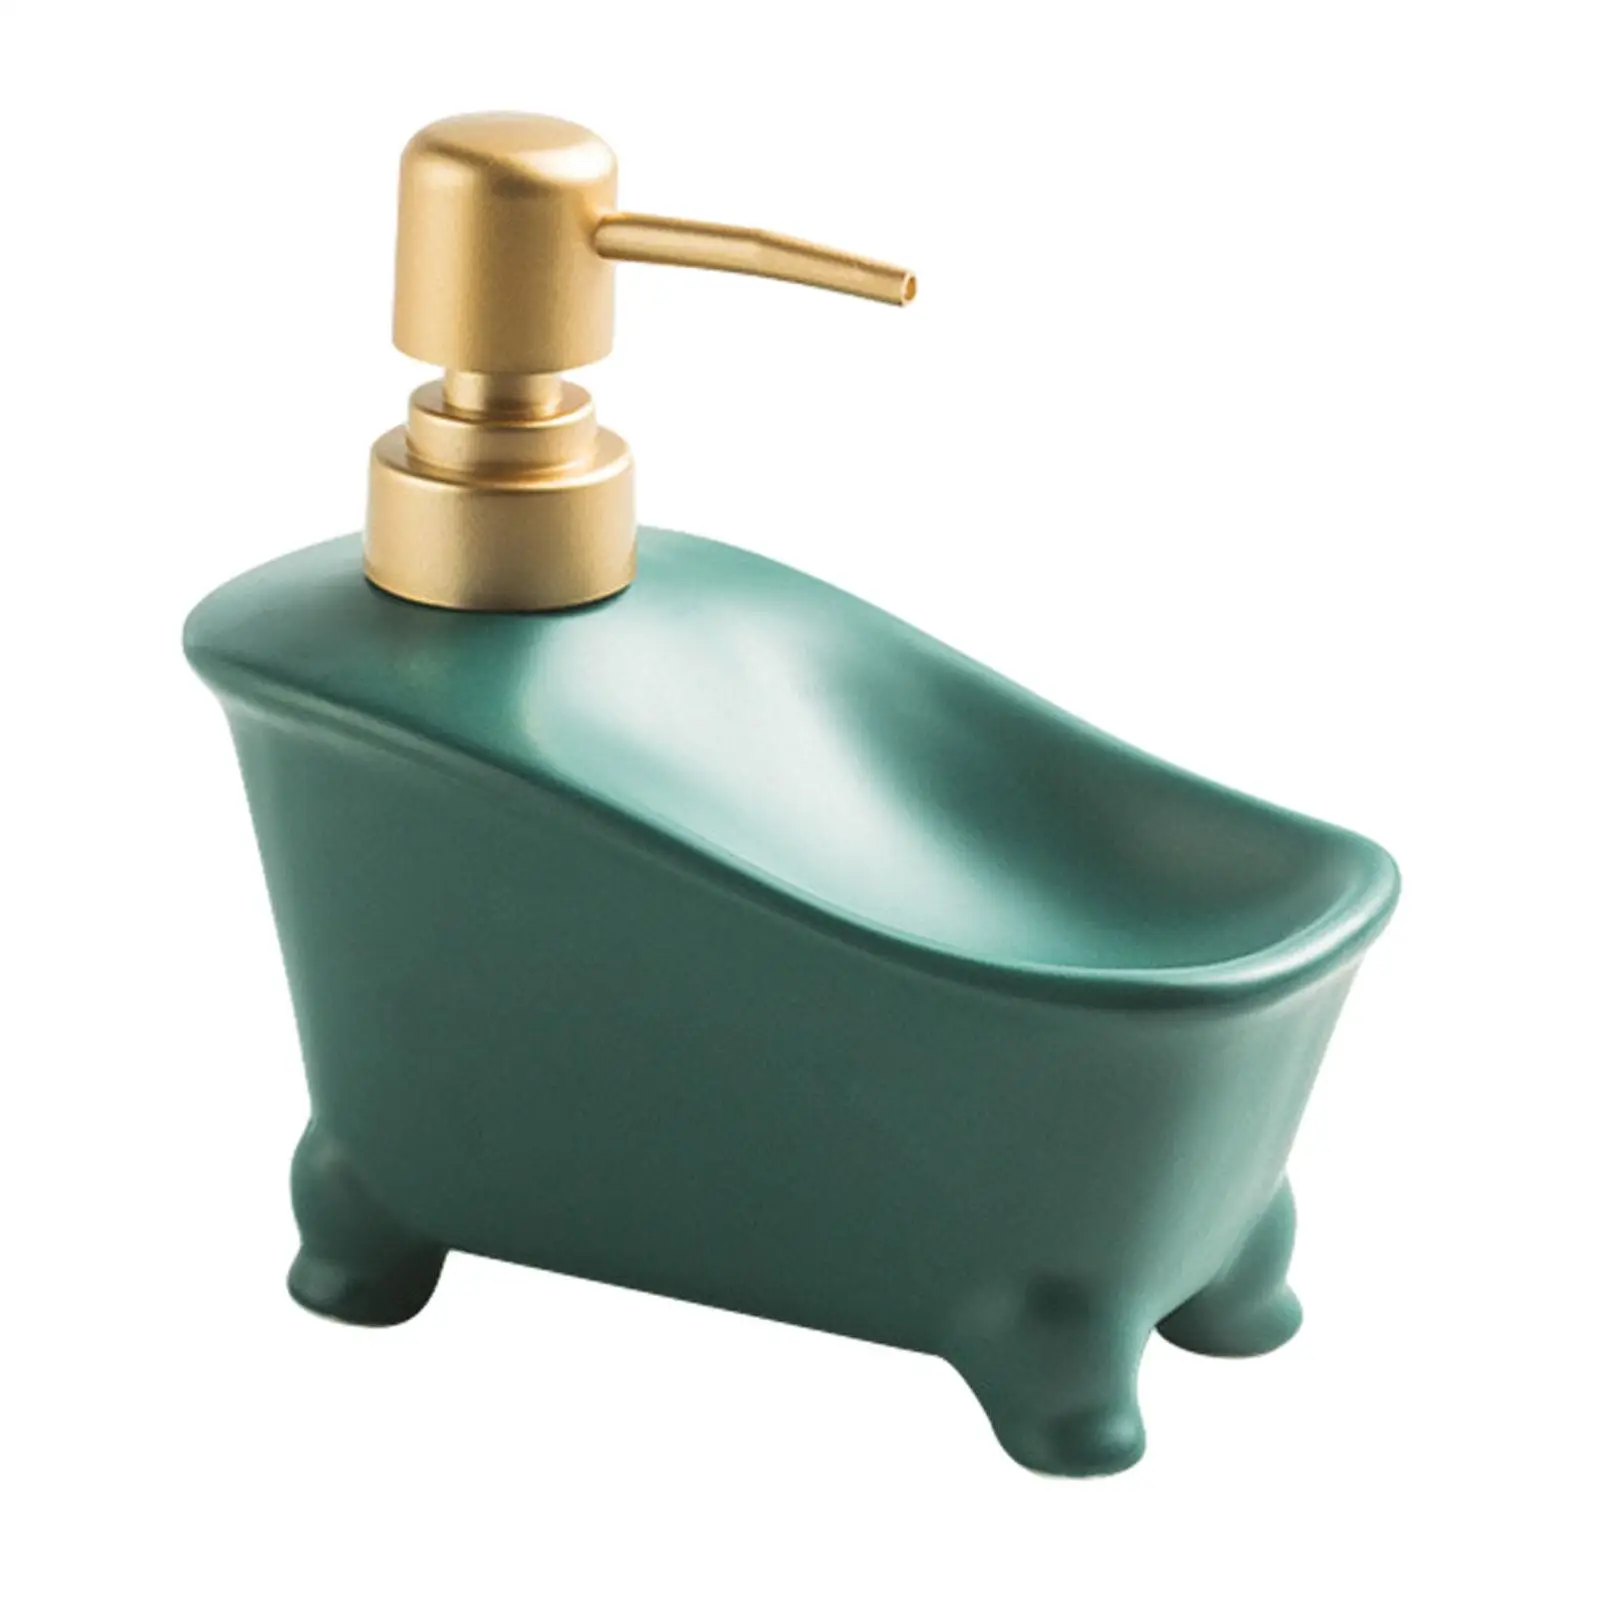 Dual Use Soap Dispenser Ceramic Bathroom Liquid Container Pump Bottle Dispenser for Hotel Countertop Bathroom Laundry Room